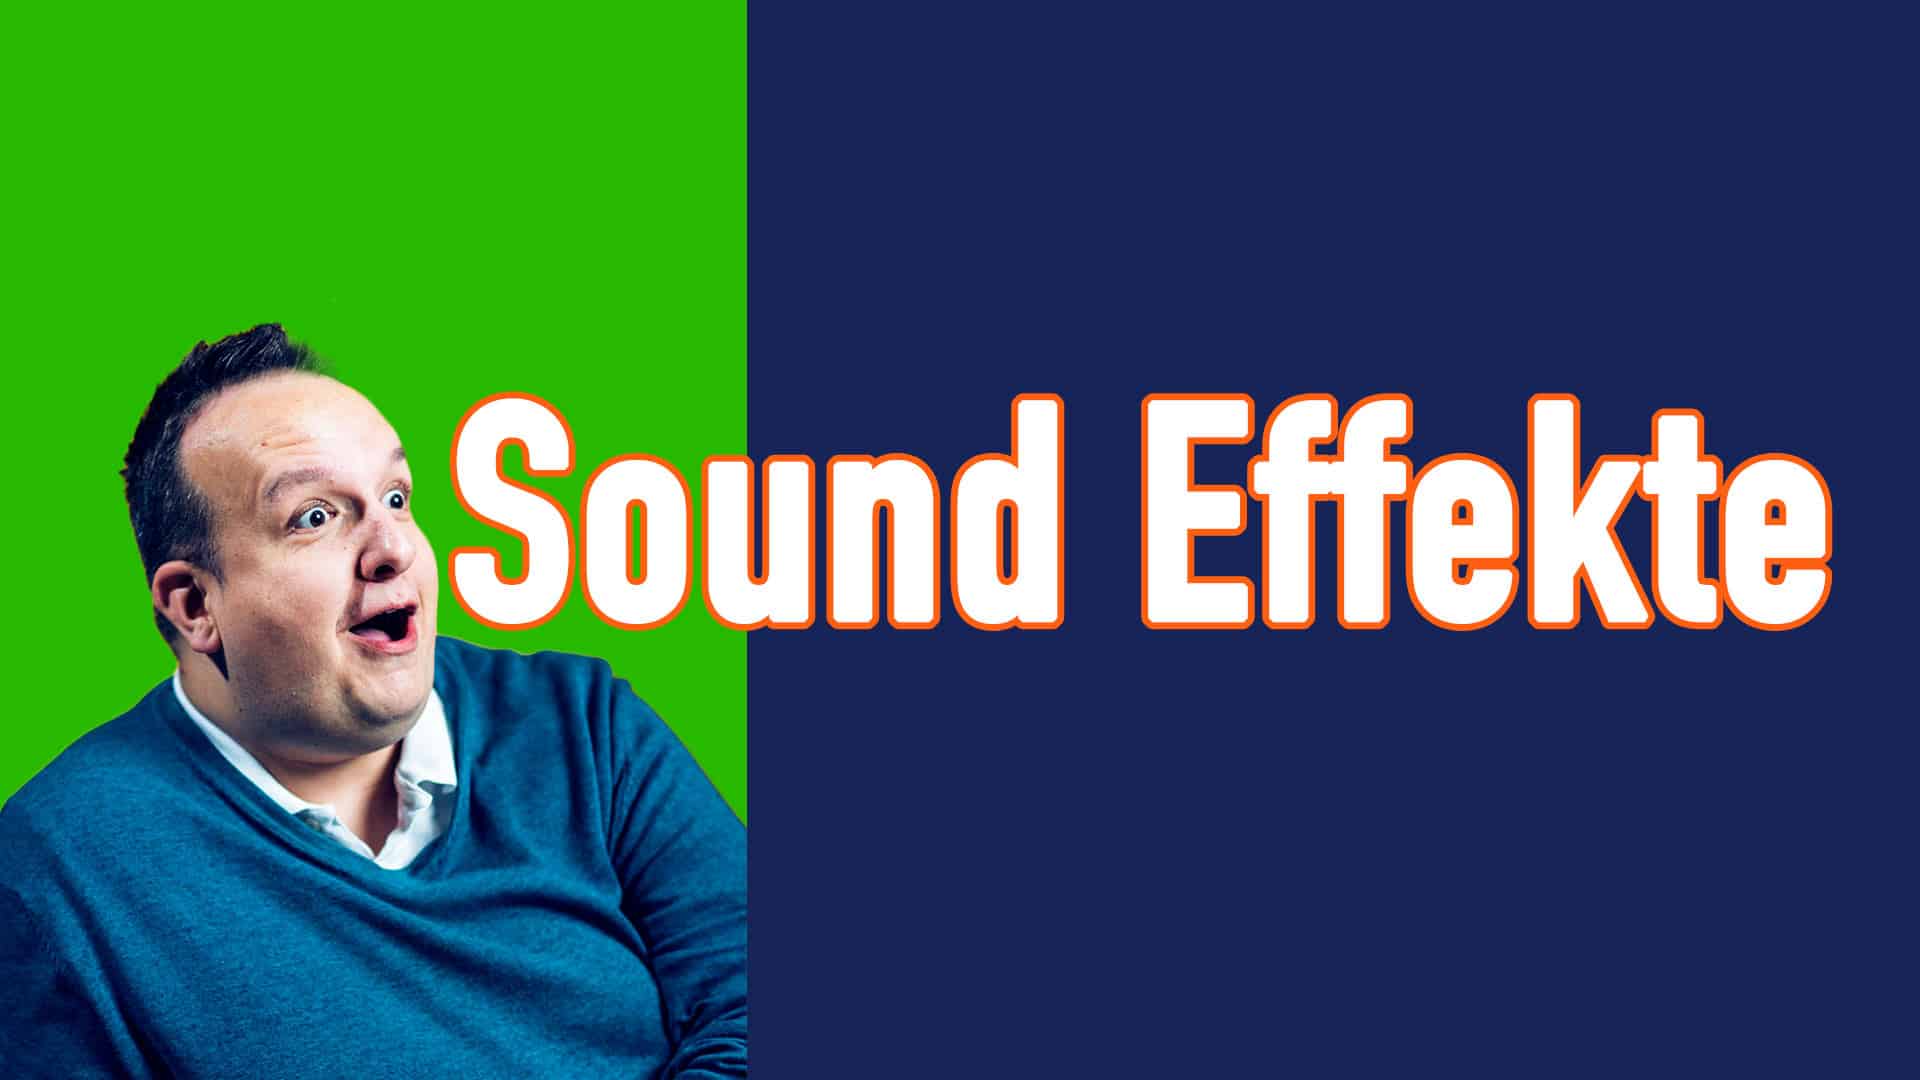 Coole Sound Effekte für eure Videos oder Livestreams